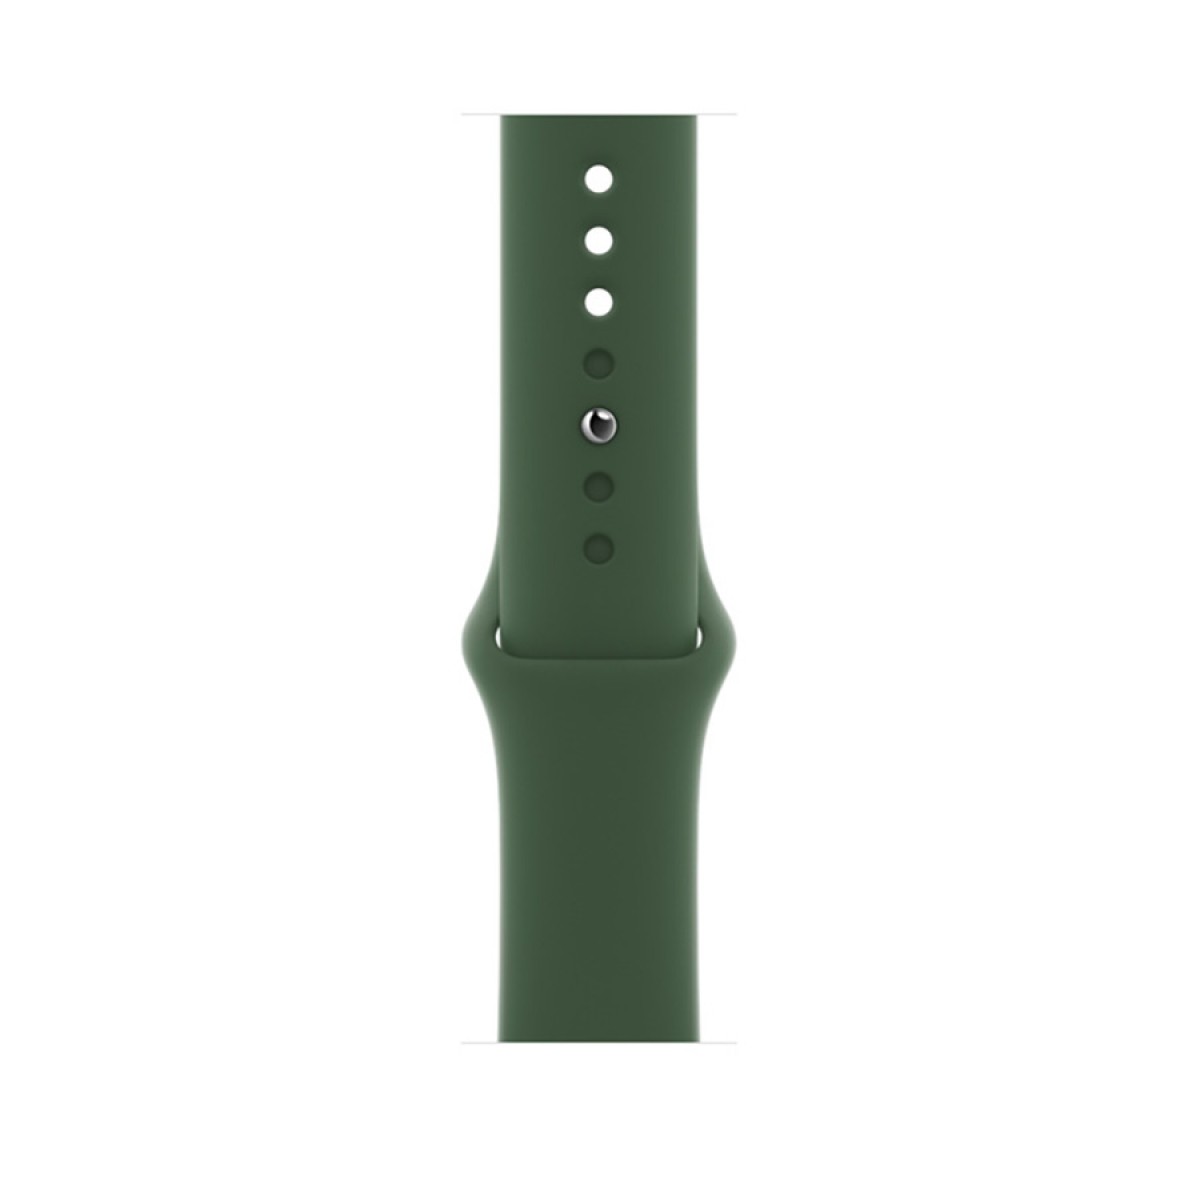 Смарт часовник Apple Watch Series 7 GPS, 41 мм, MKN03BS/A